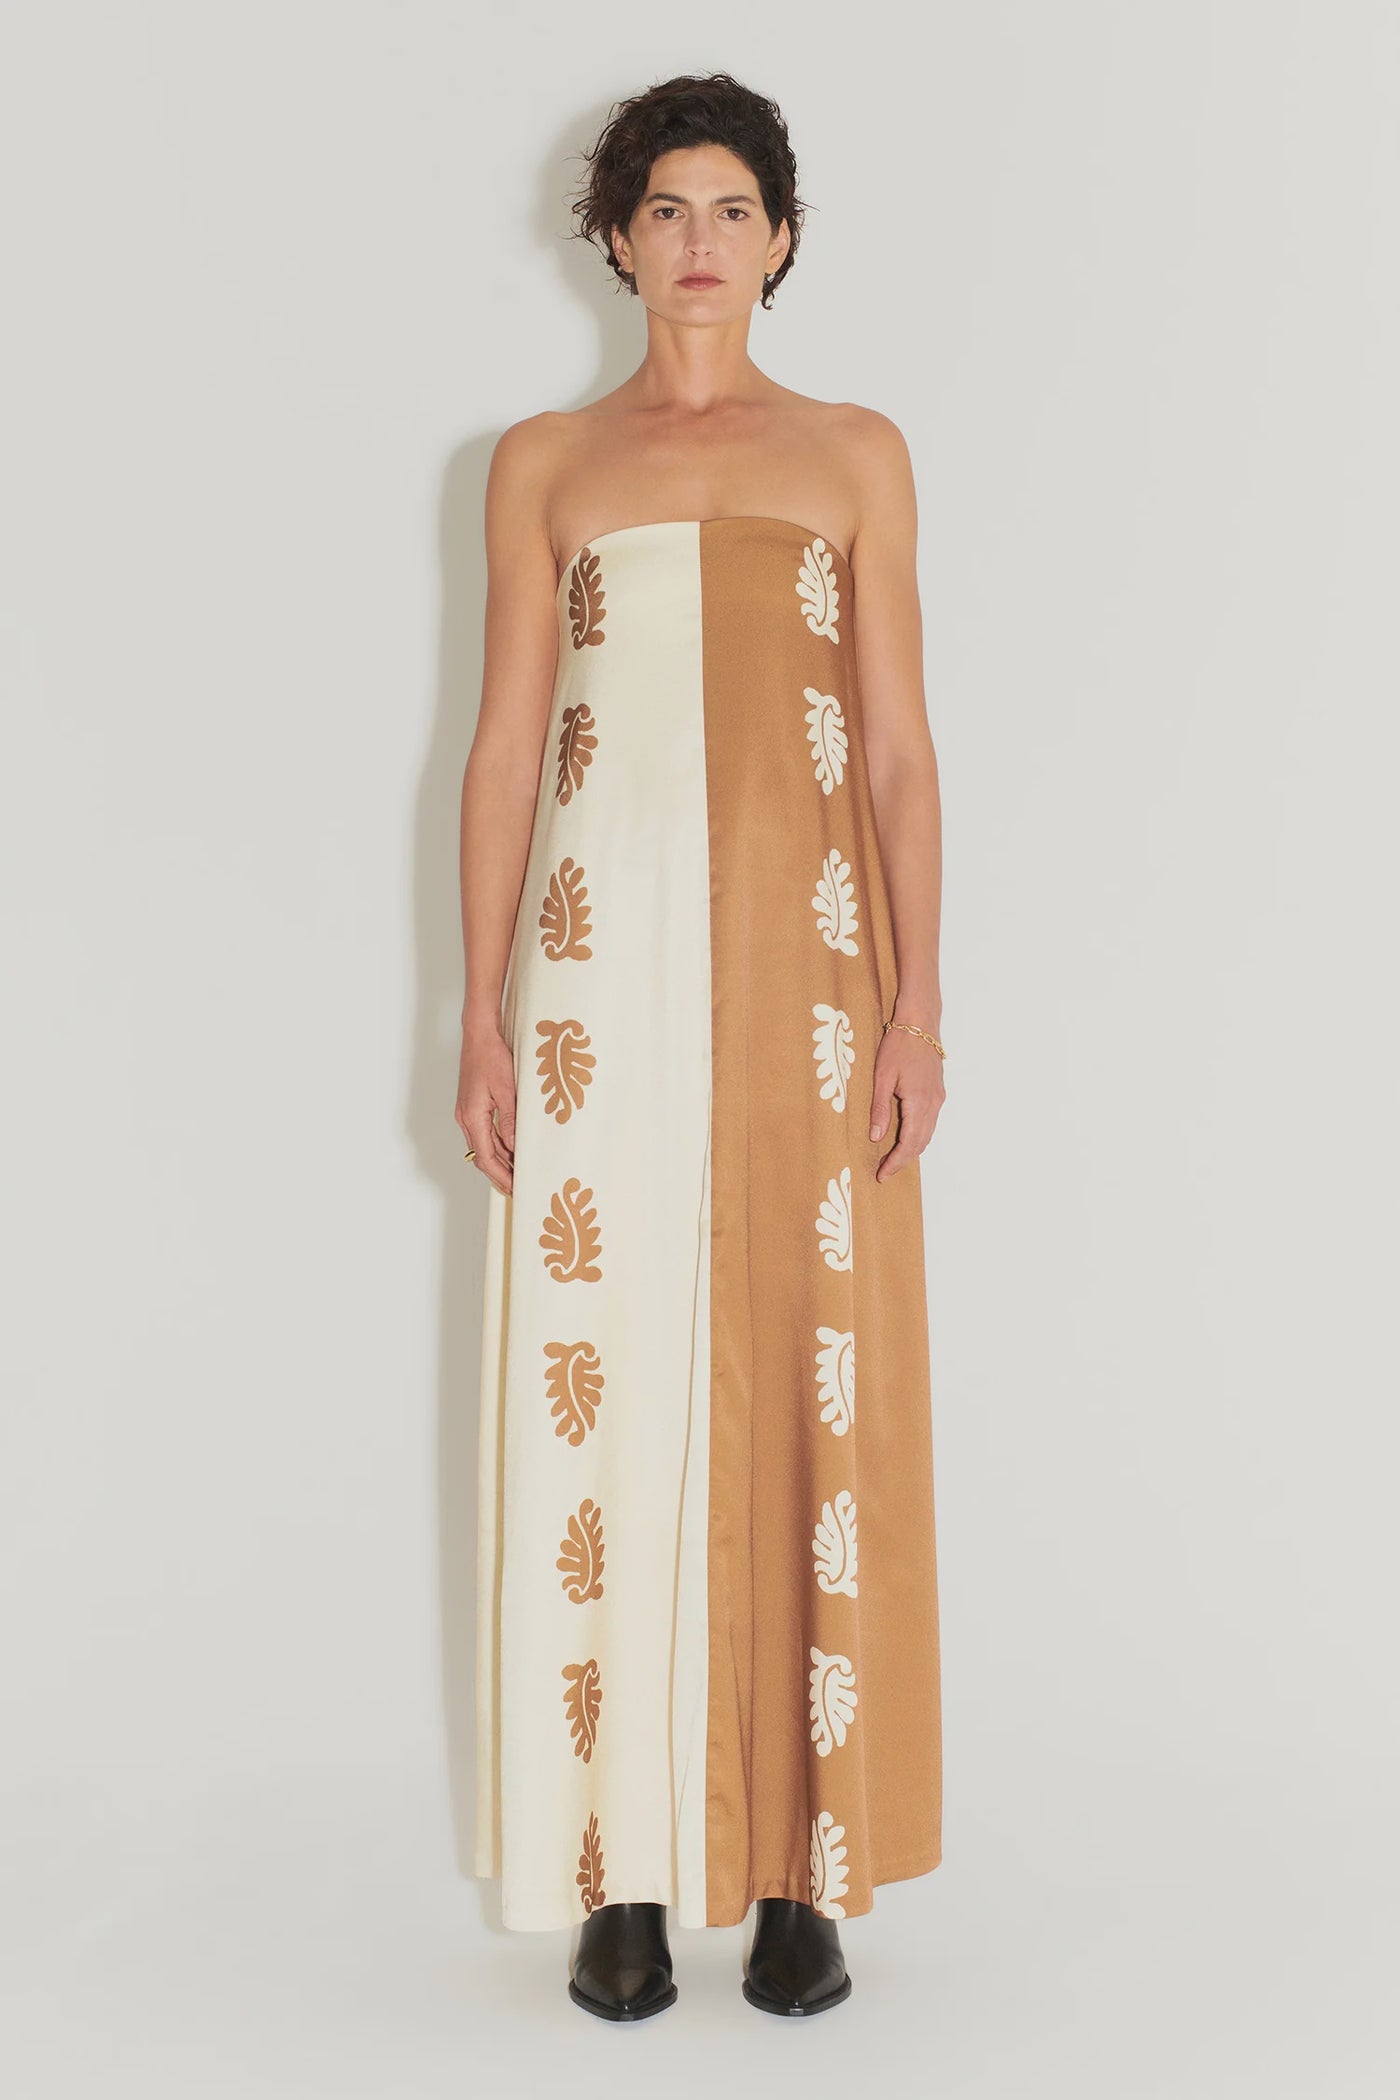 Ikaria Trapeze Dress - Stencil Leaf